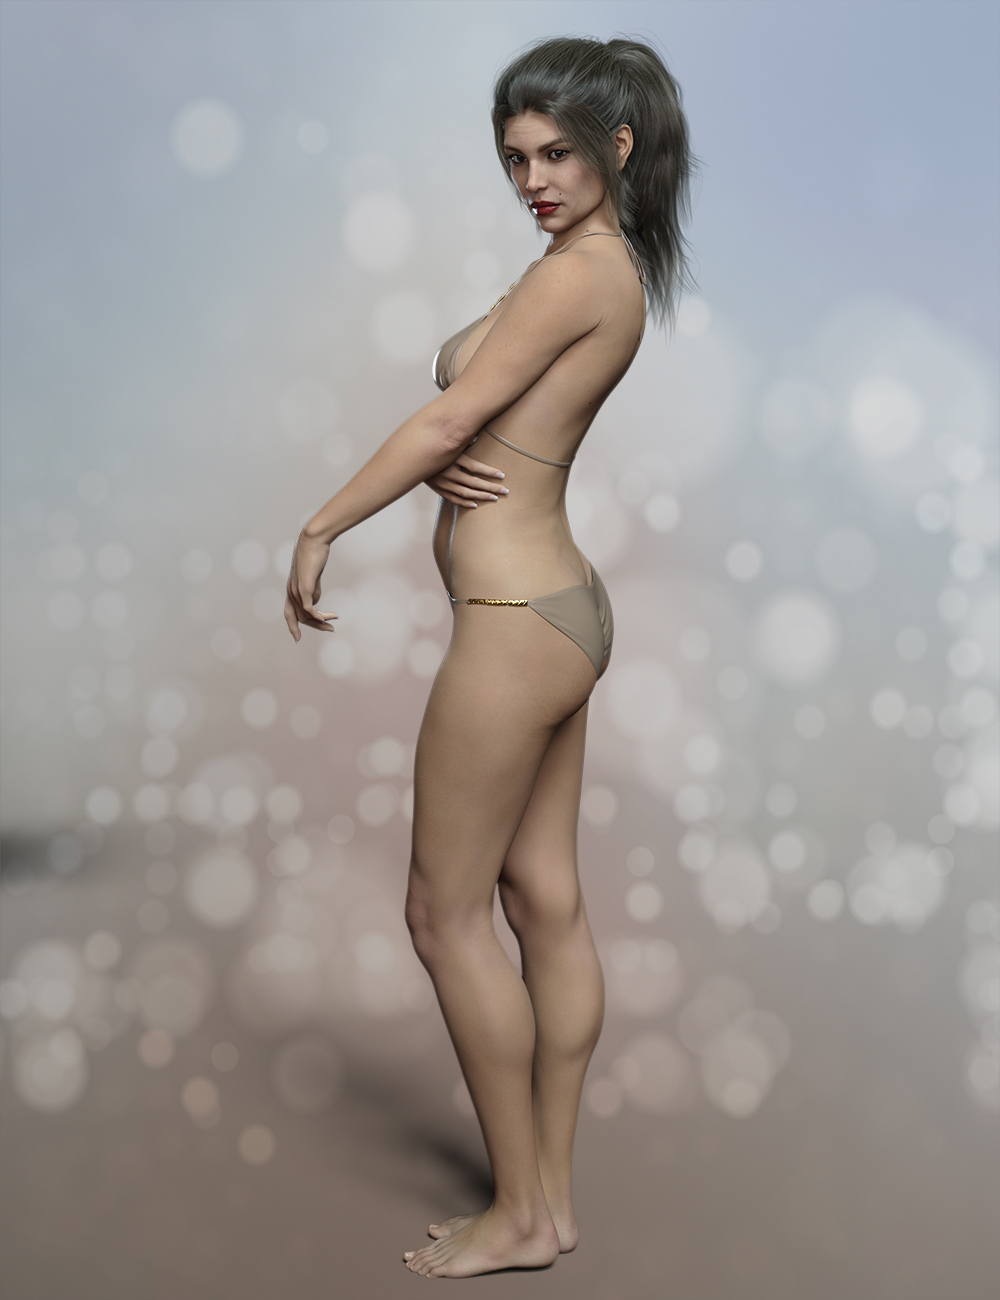 FWSA Edith HD for Alexandra 8 by: Fred Winkler ArtSabby, 3D Models by Daz 3D